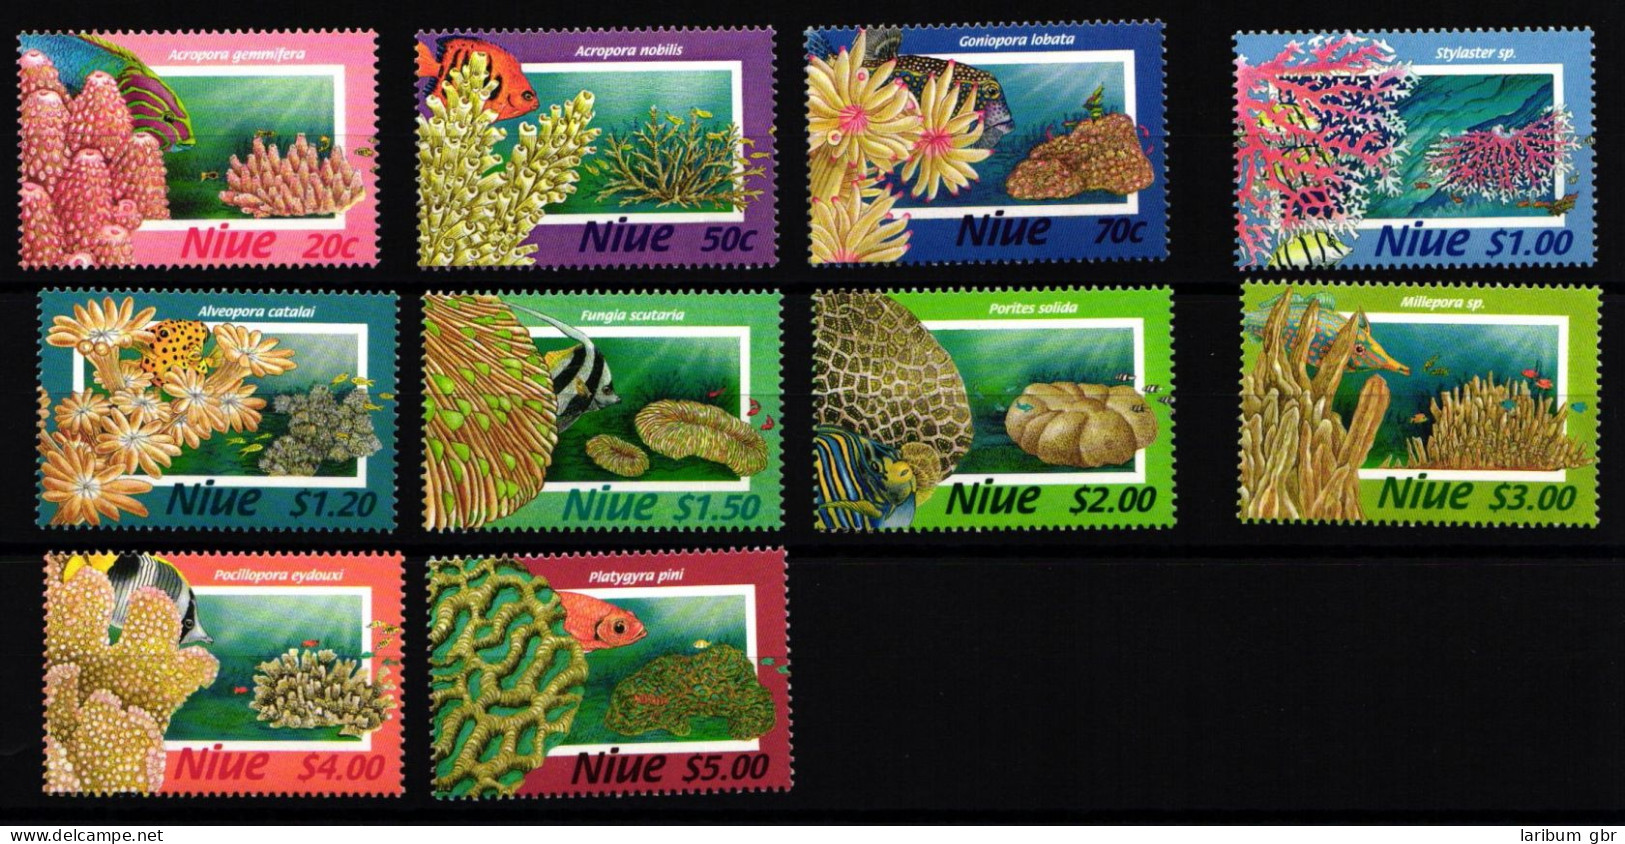 Niue 869-878 Postfrisch Meeresfauna #JW017 - Niue